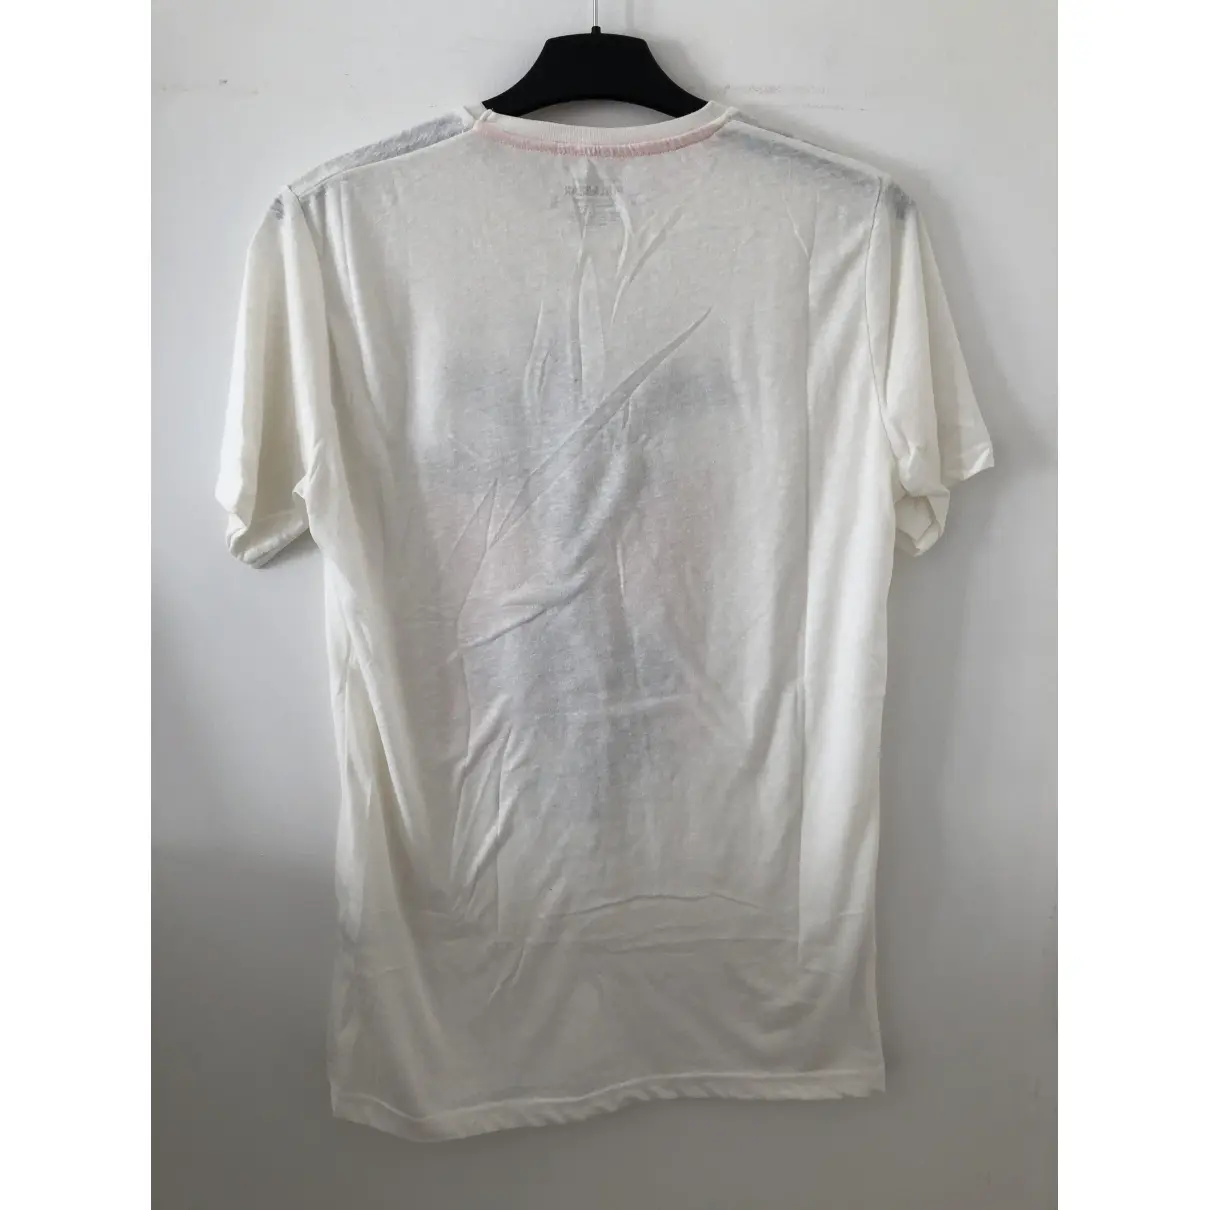 Buy PULL & BEAR White Polyester T-shirt online